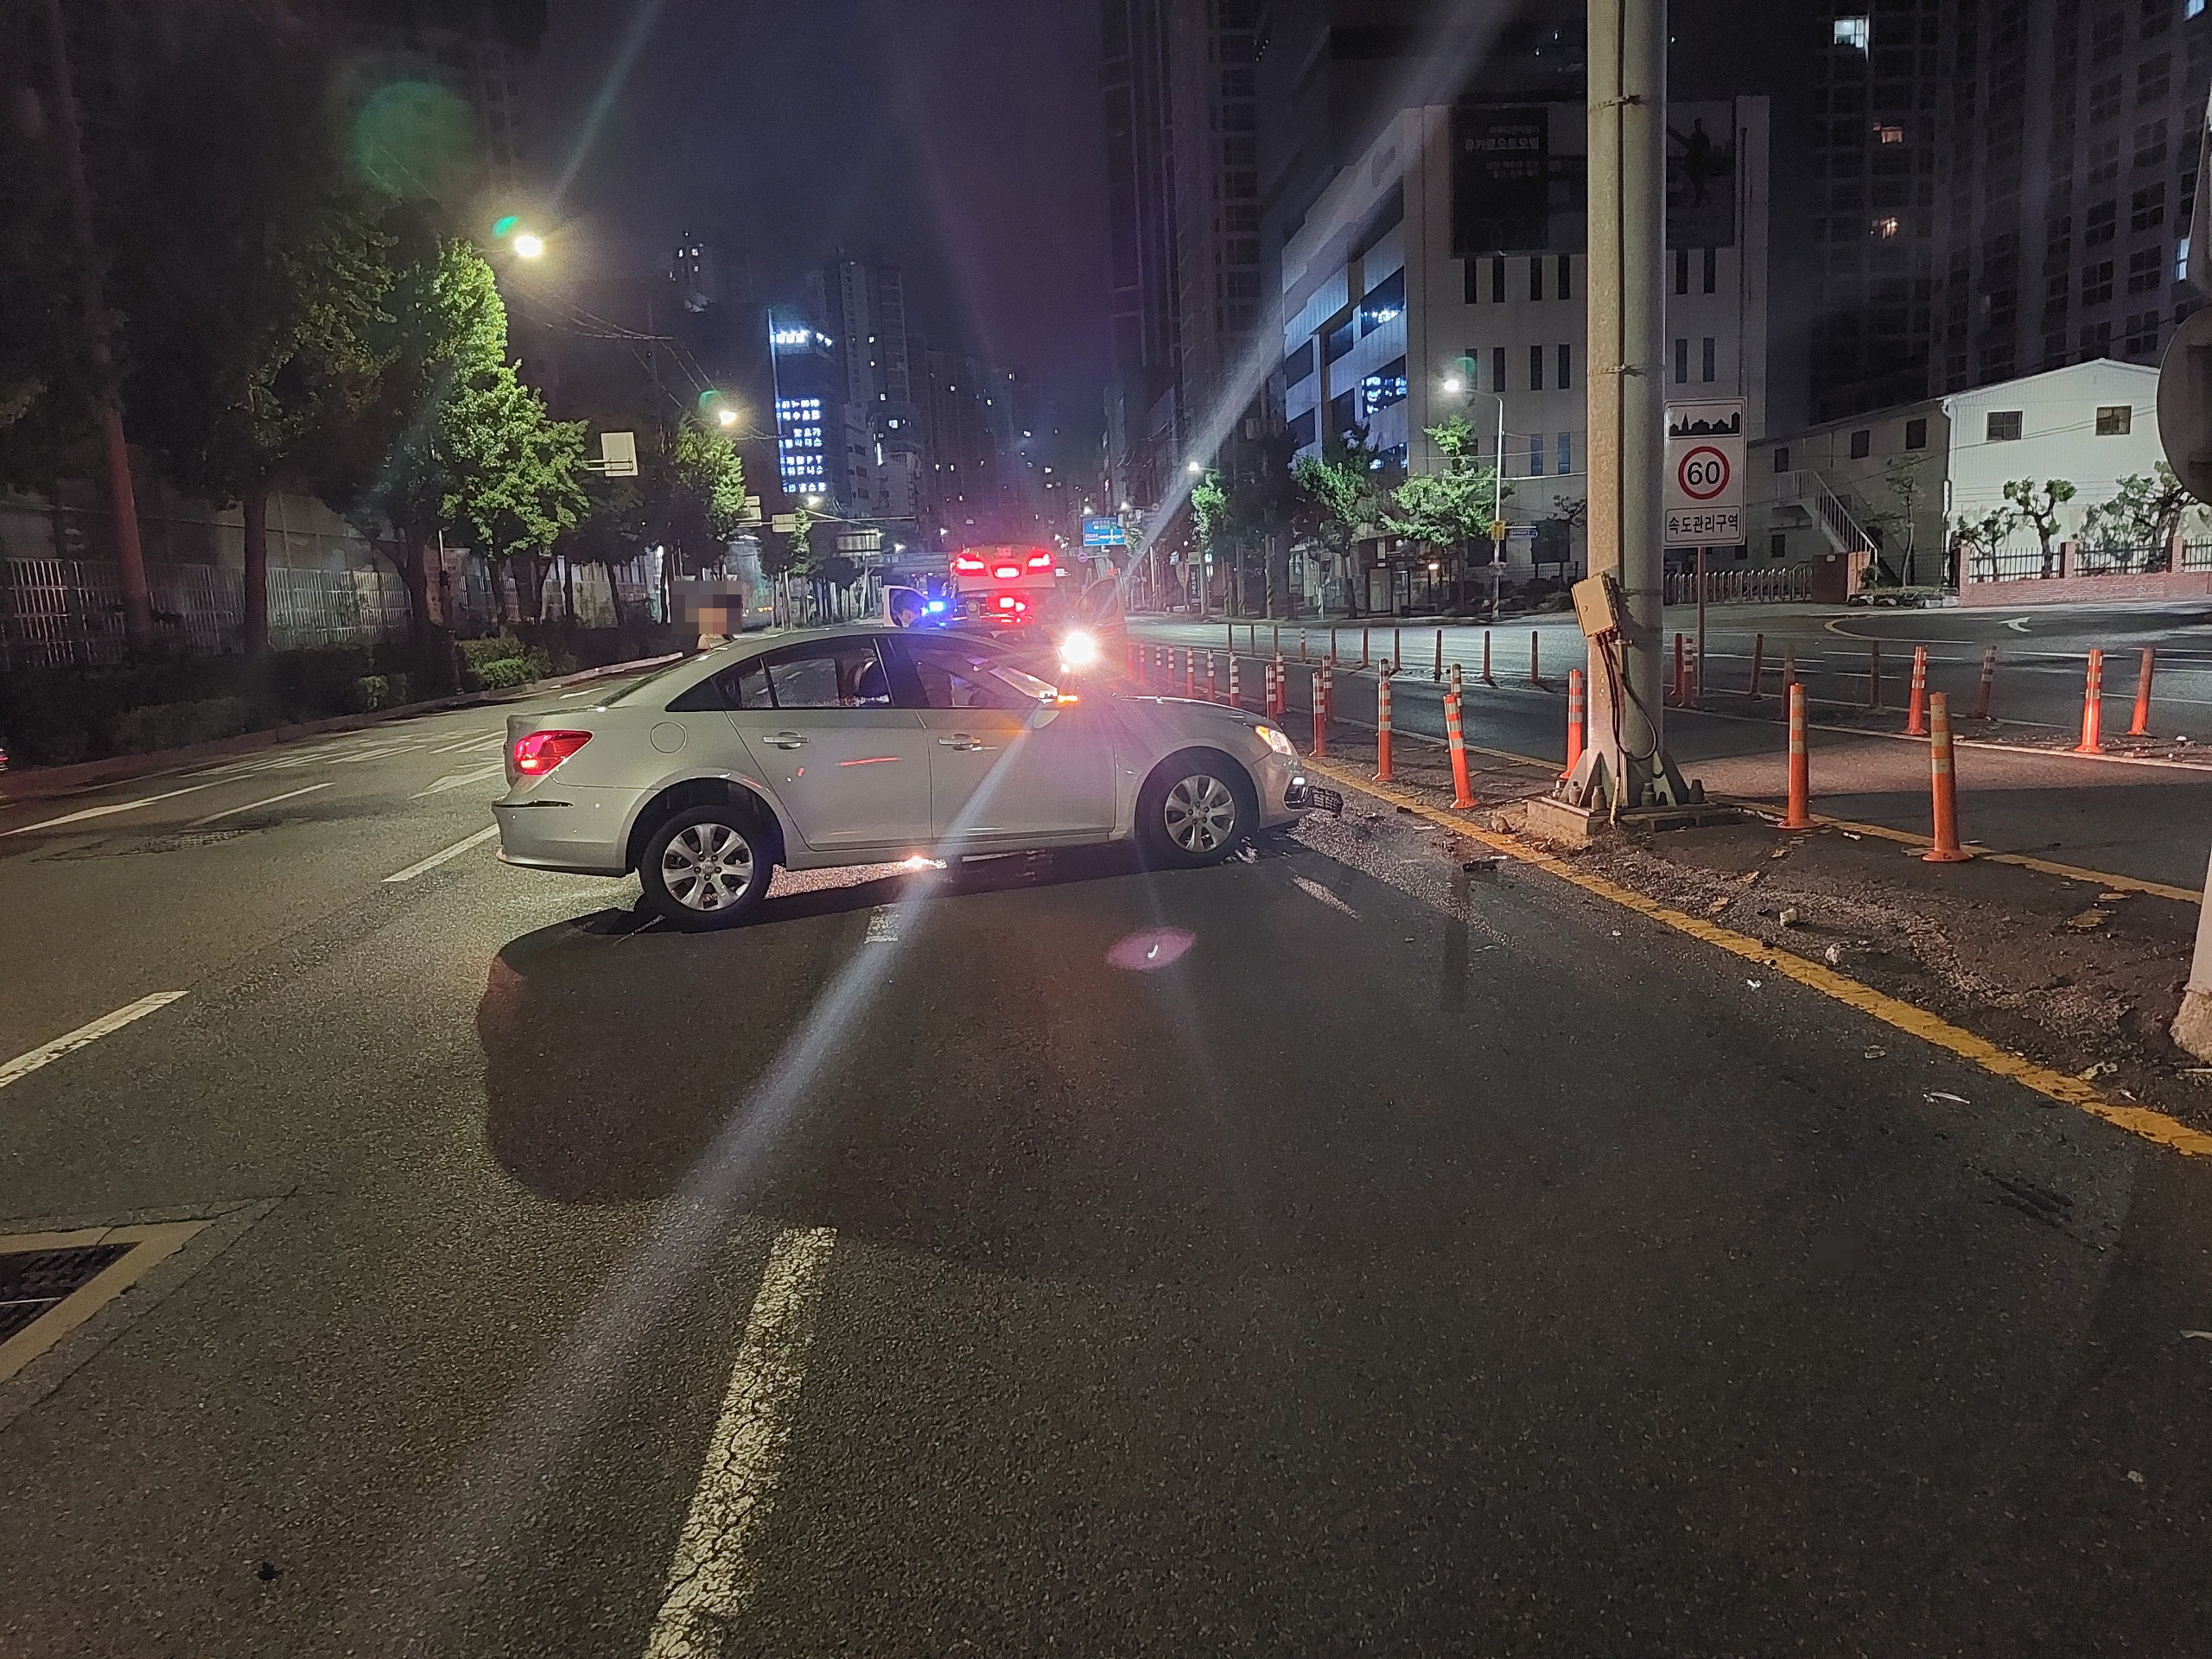 3일 부산 수영구 한 도로에서 음주운전 혐의를 받는 A씨가 몰던 차량이 도로 구조물을 들이받고 멈춰 있다. 부산경찰청 제공